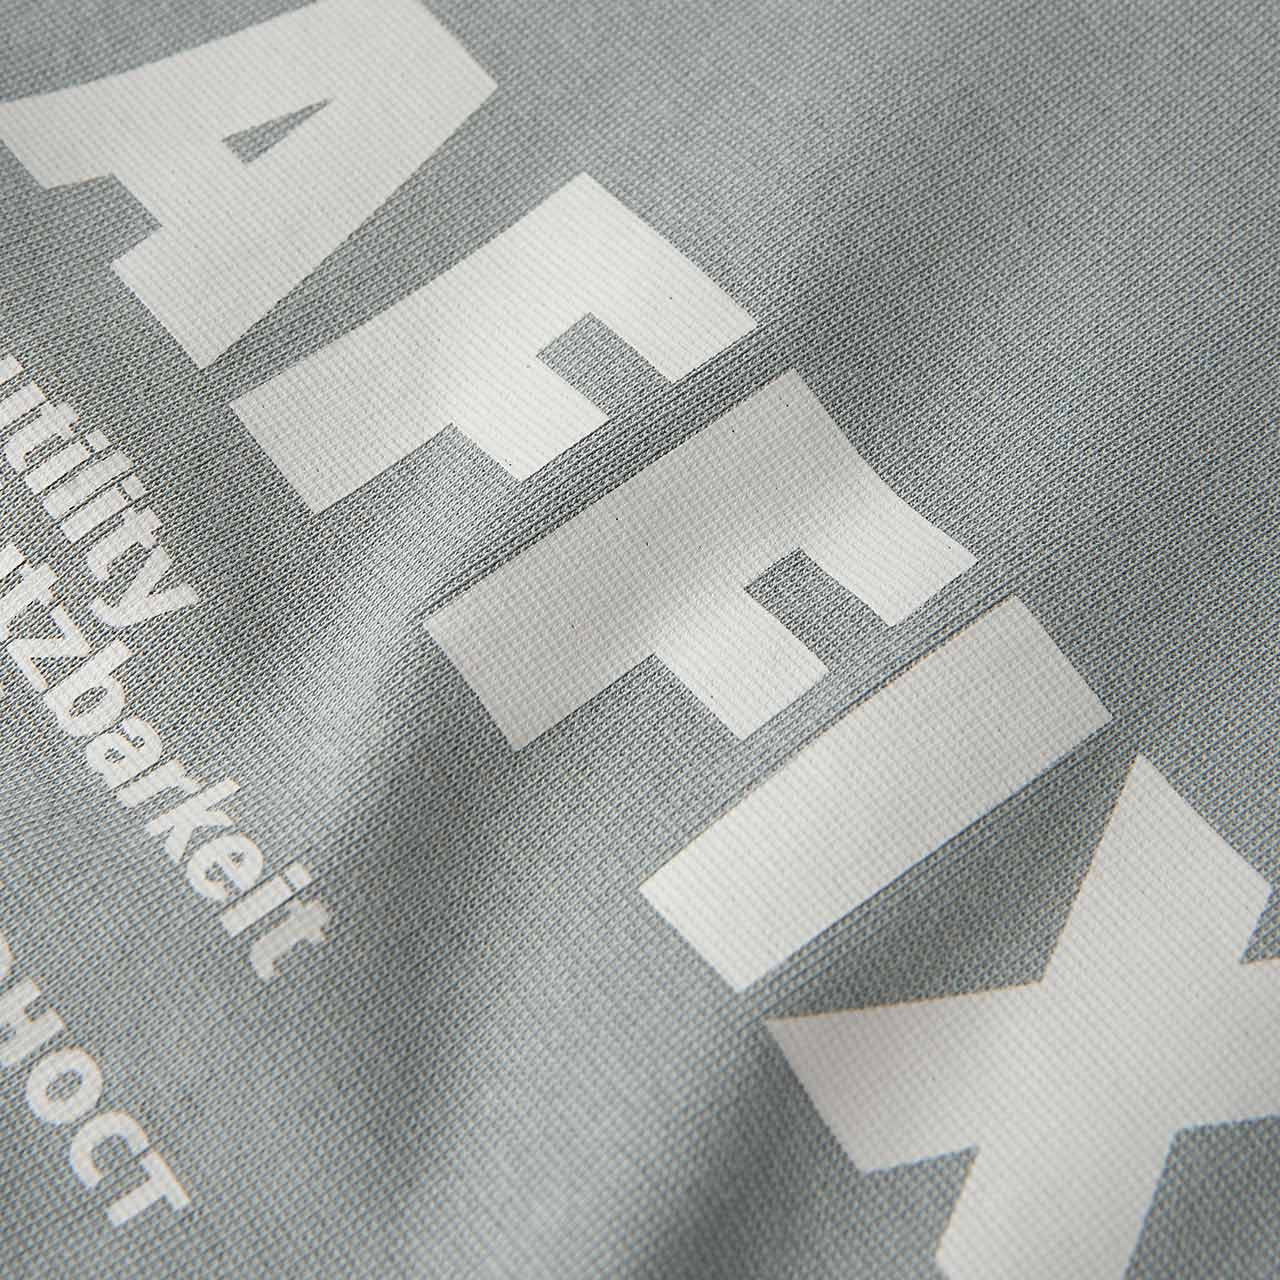 affix works affix works standardised logo pocket t-shirt (silver grey)